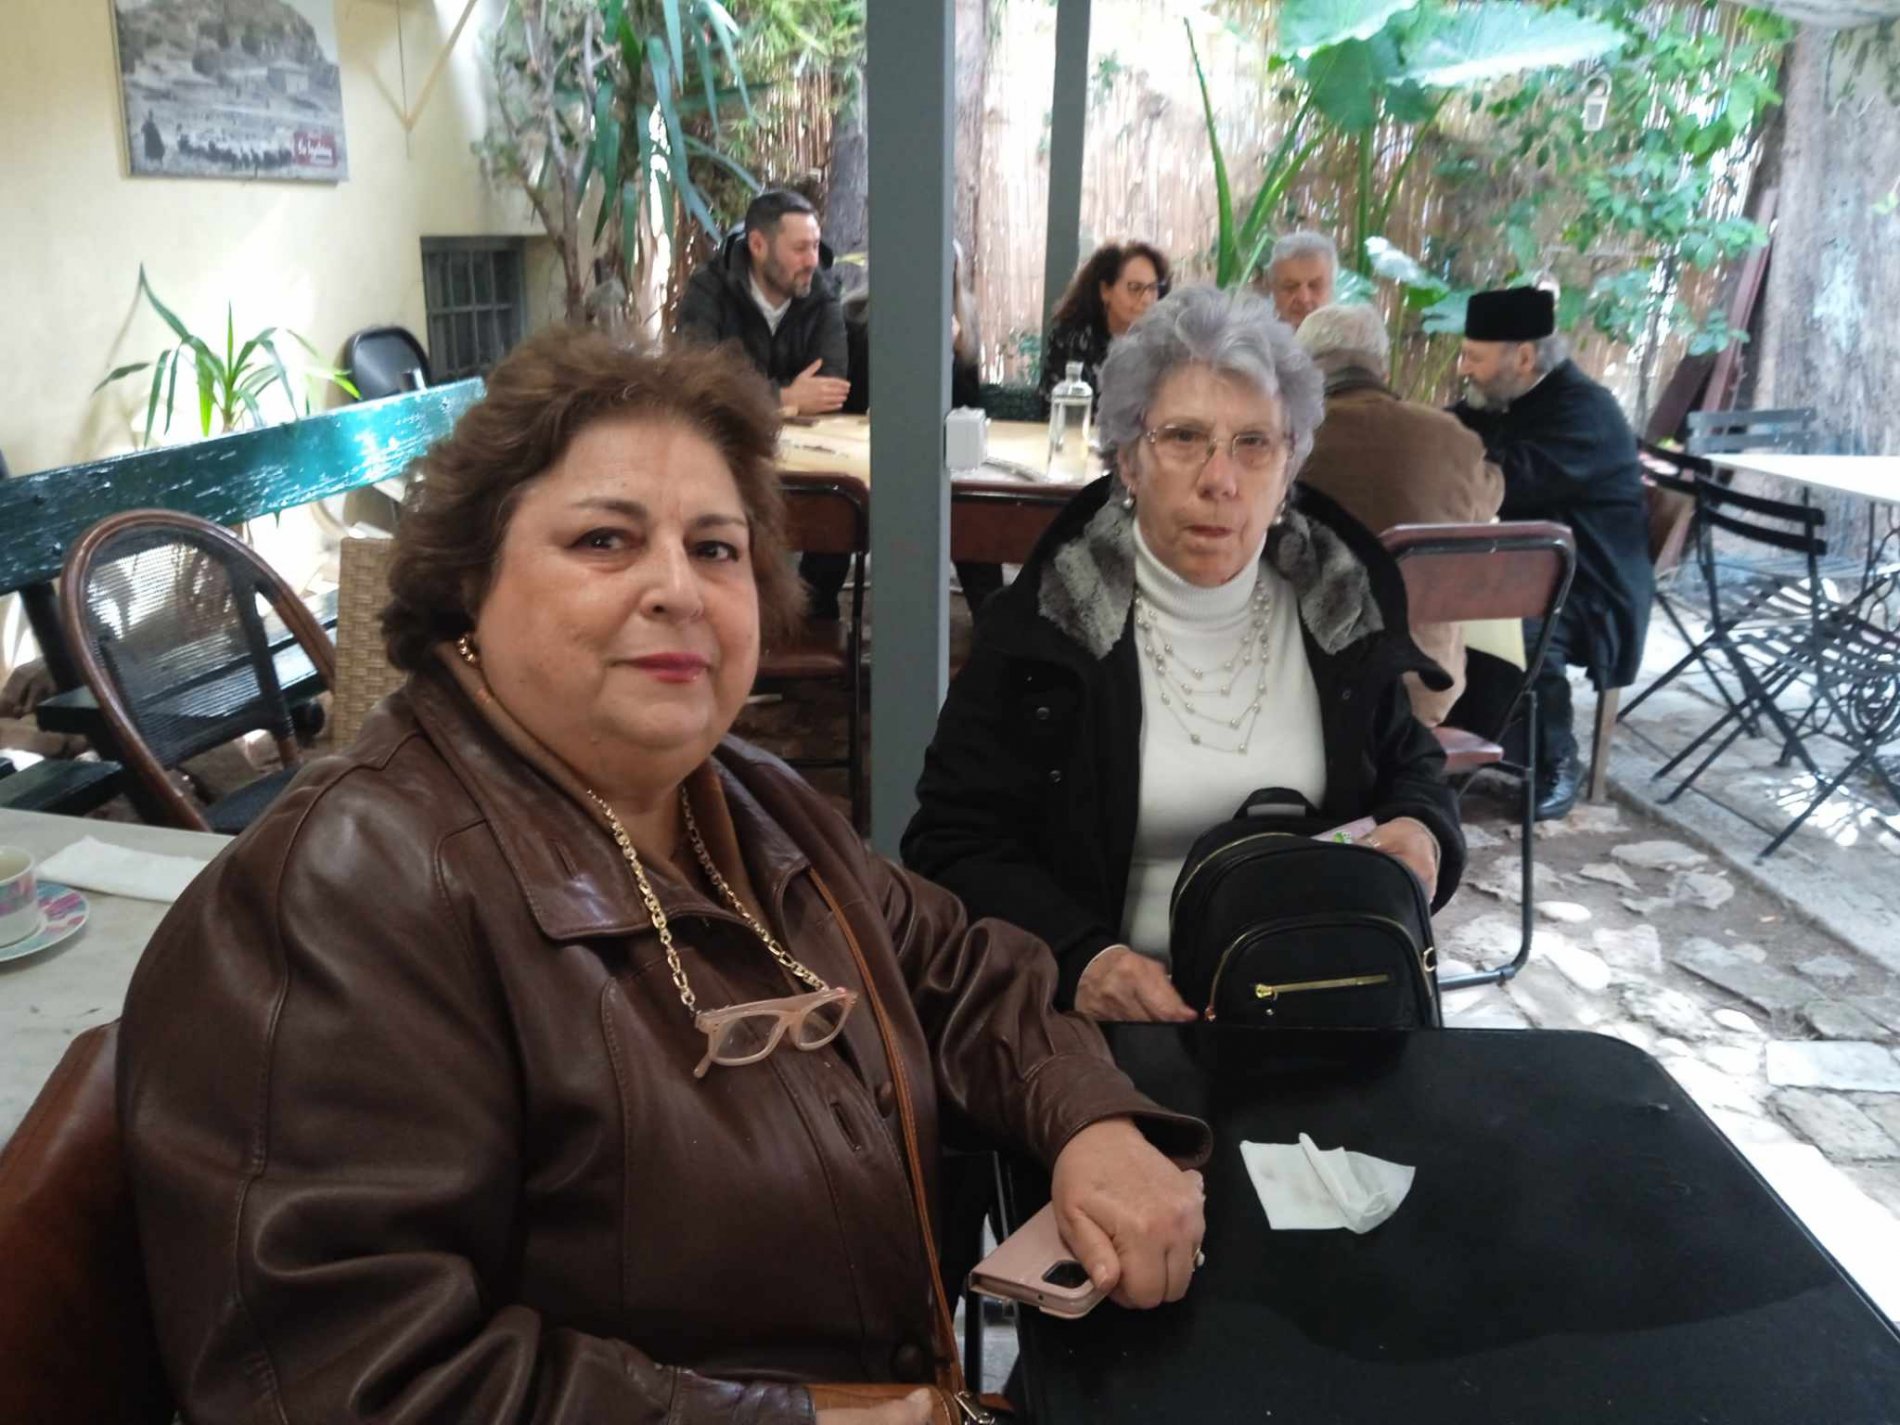 [εικόνες] Η κοπή πίτας στον Σύλλογο Απανταχού Σκιαθιτών στην Αθήνα